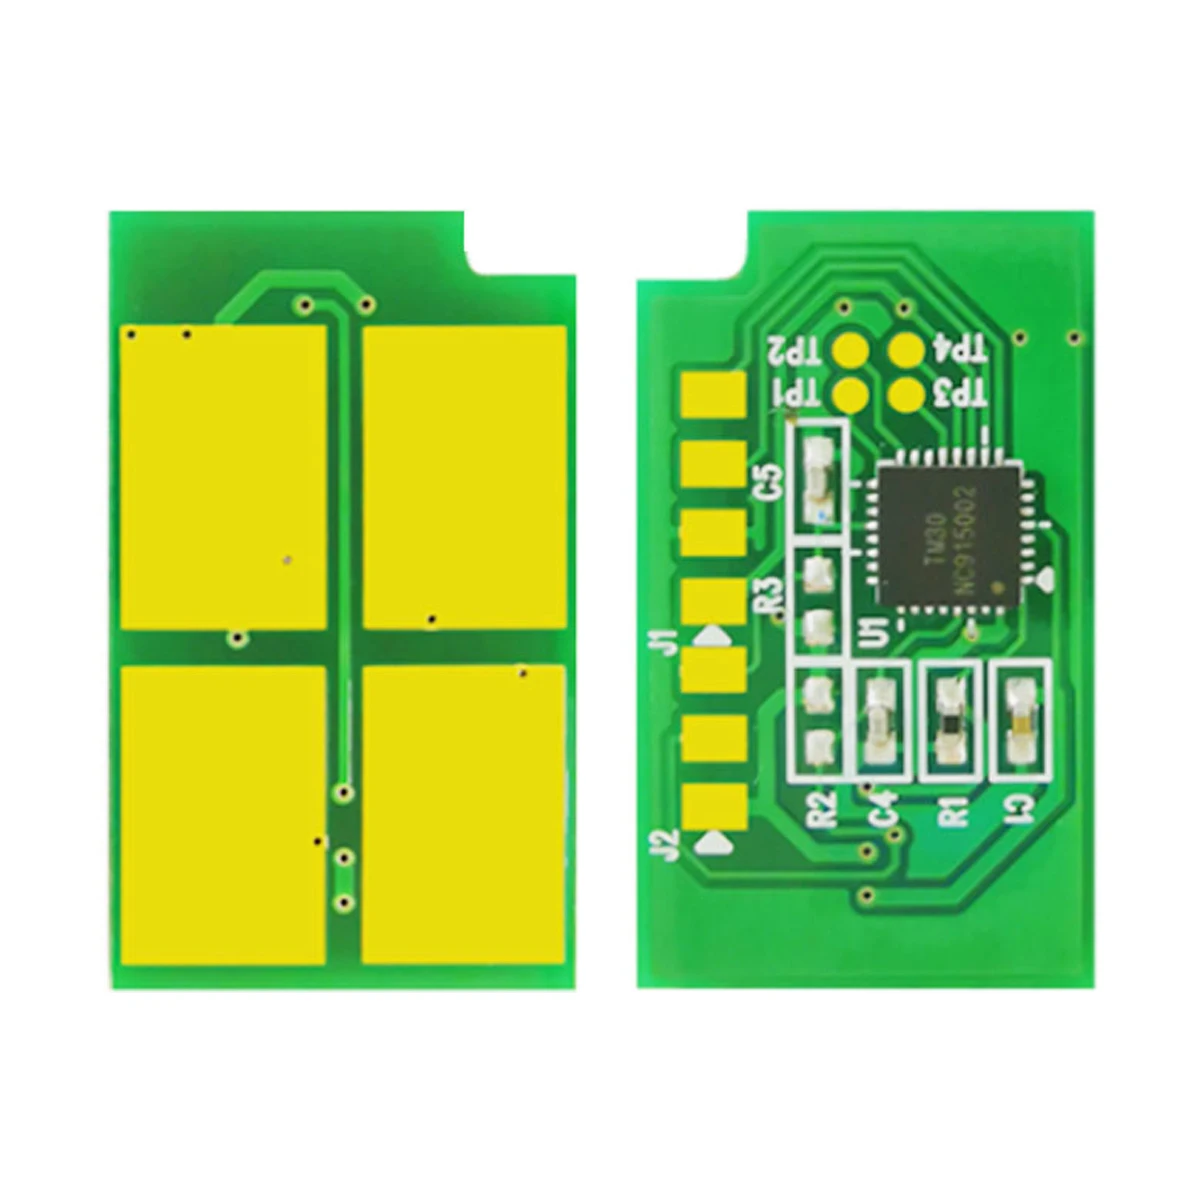 

Тонер-картридж для аккумулятора Pantum M7100 P3010 P3300 M6700 M6800 M7102 M7200 M7300